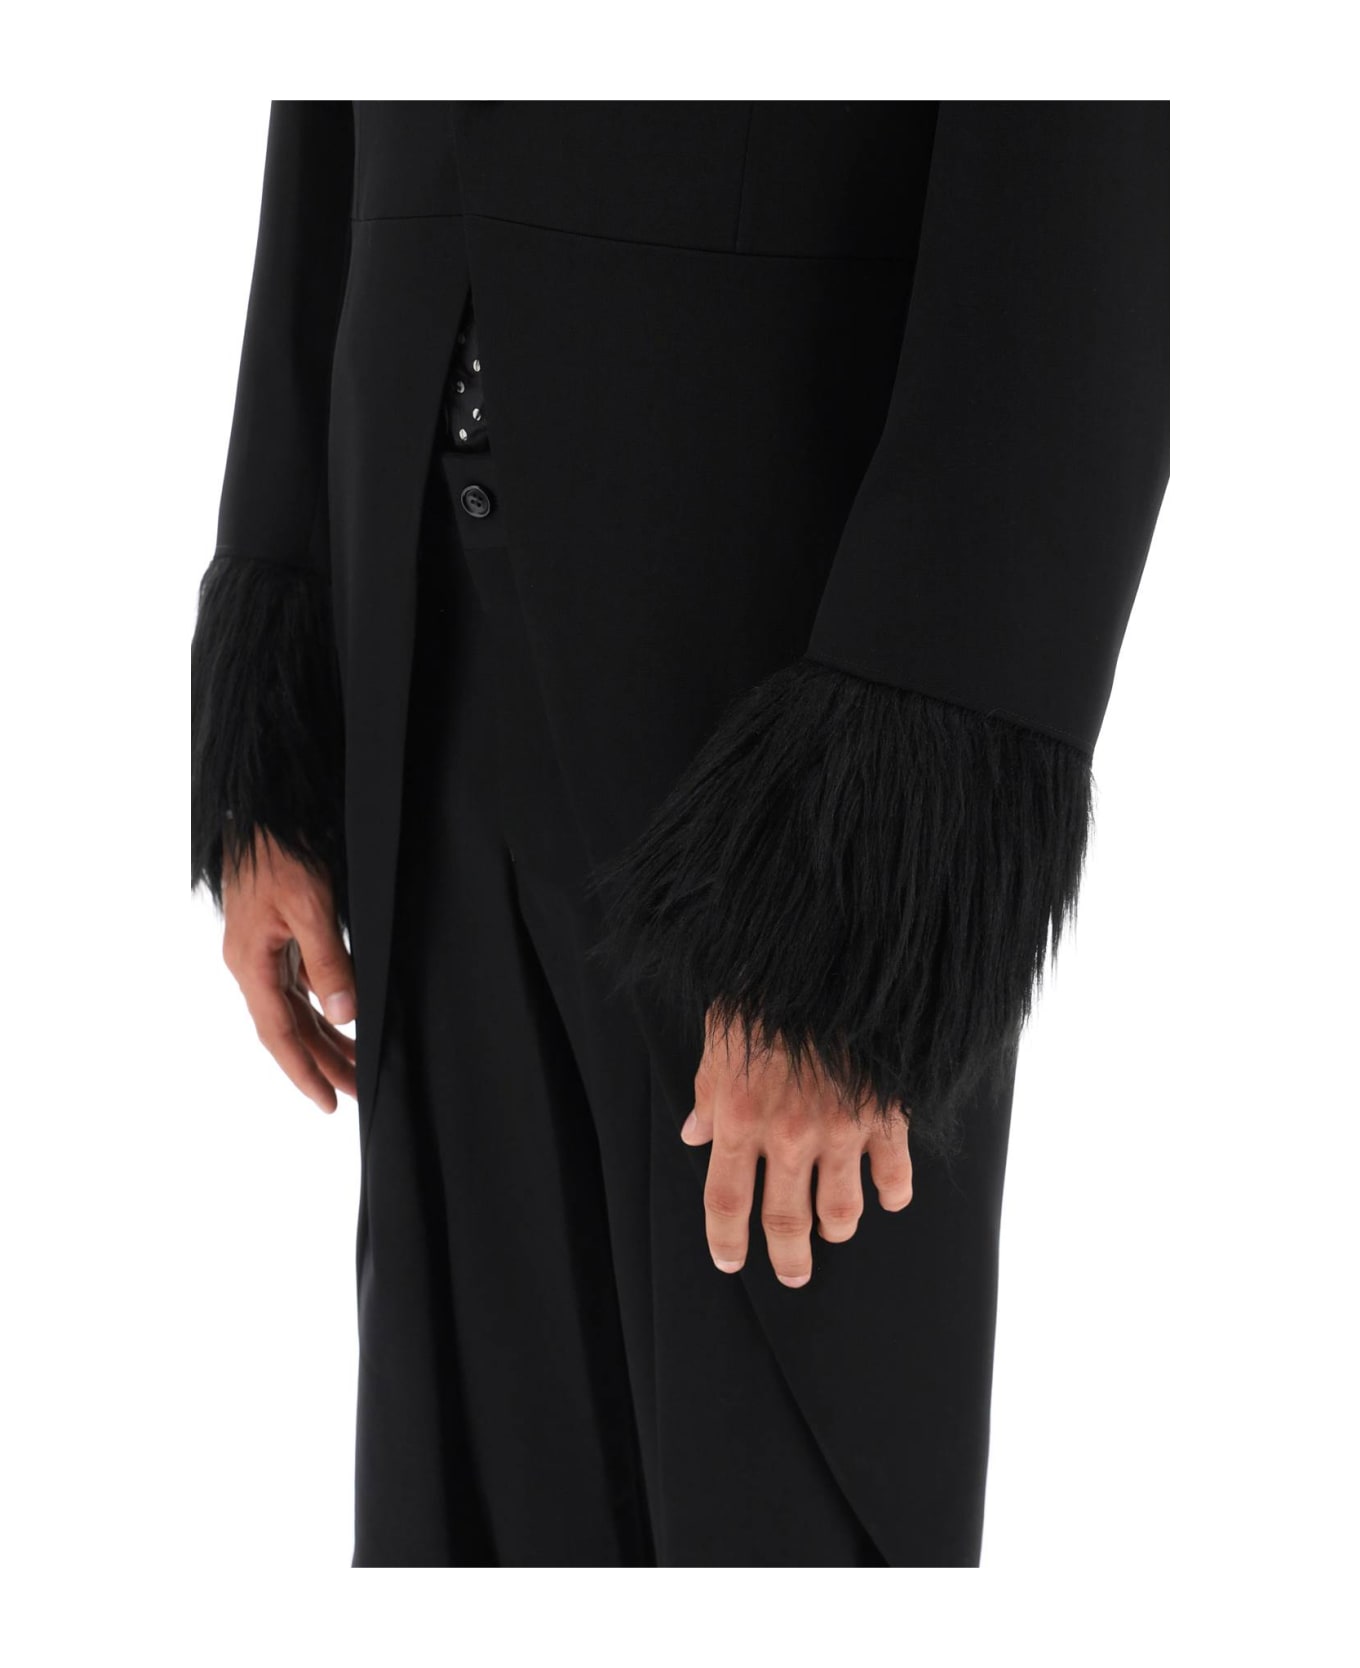 Comme Des Garçons Homme Plus Tailcoat With Eco-fur Inserts - BLACK BLACK (Black)